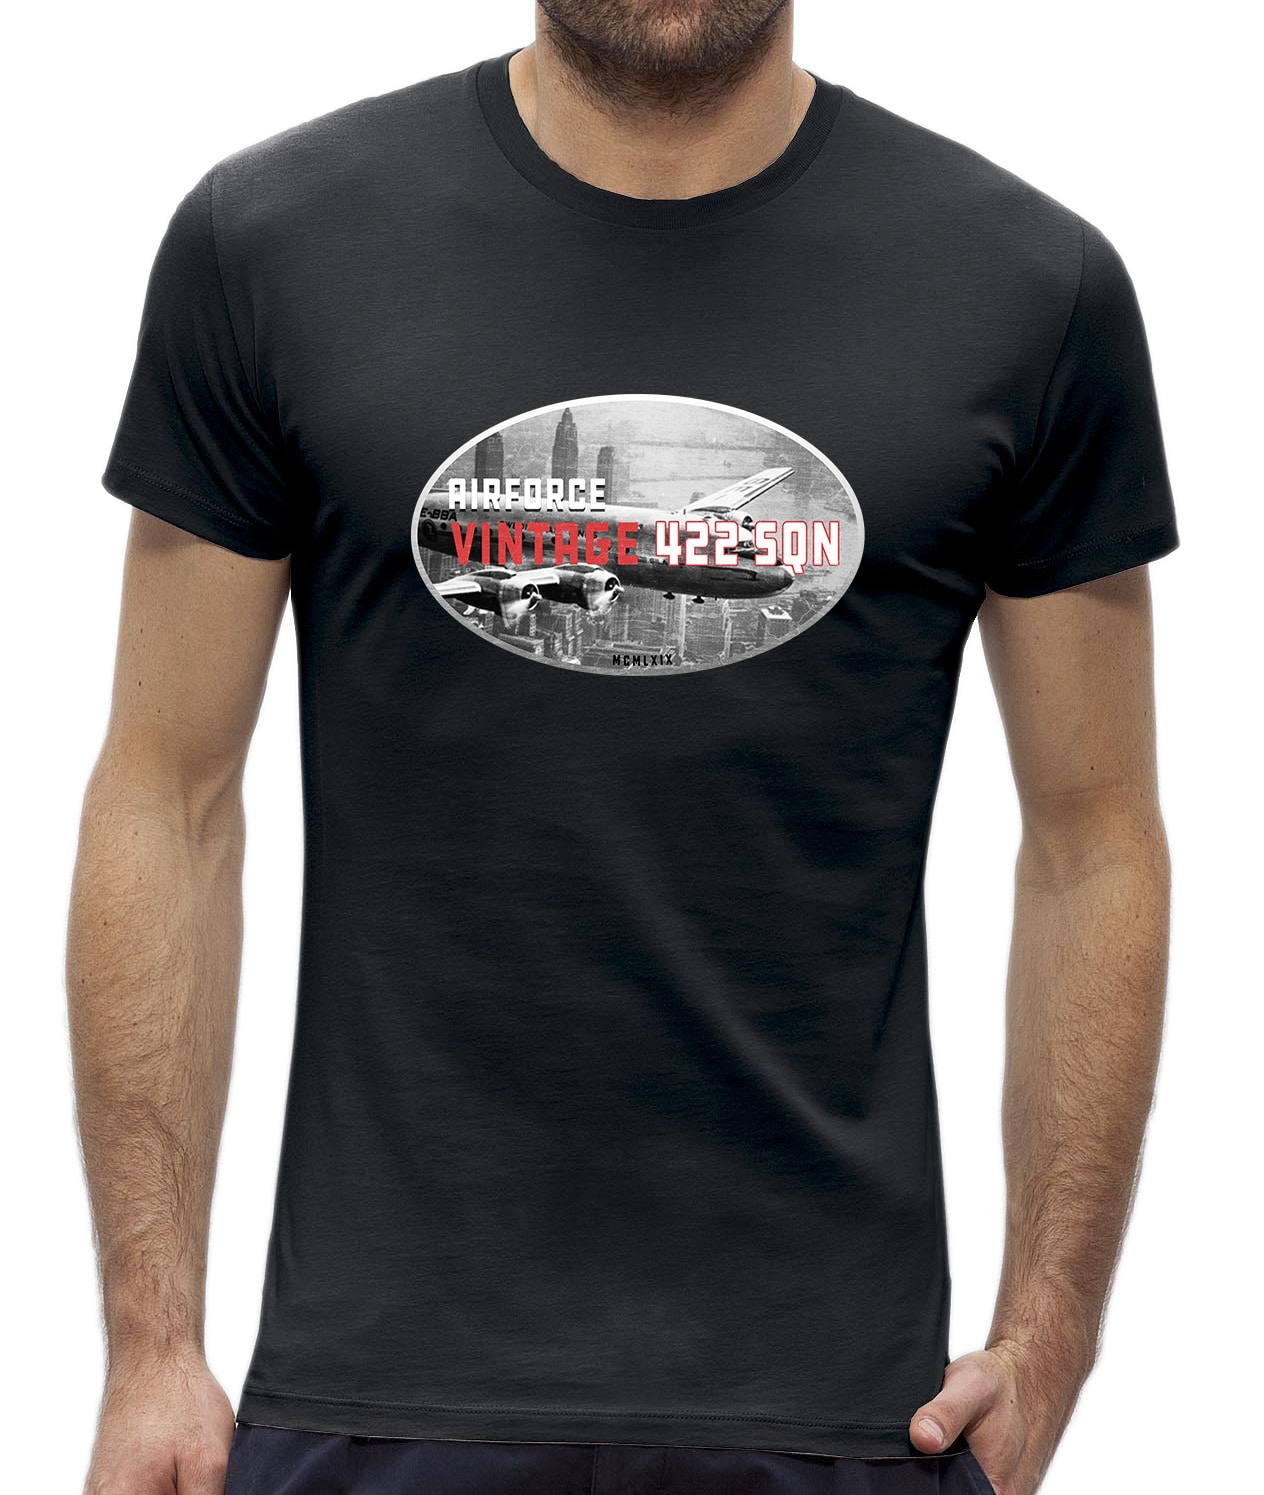 steen wiel Bedienen Heren t-shirt met een vintage vliegtuig design - NewYorkFinest